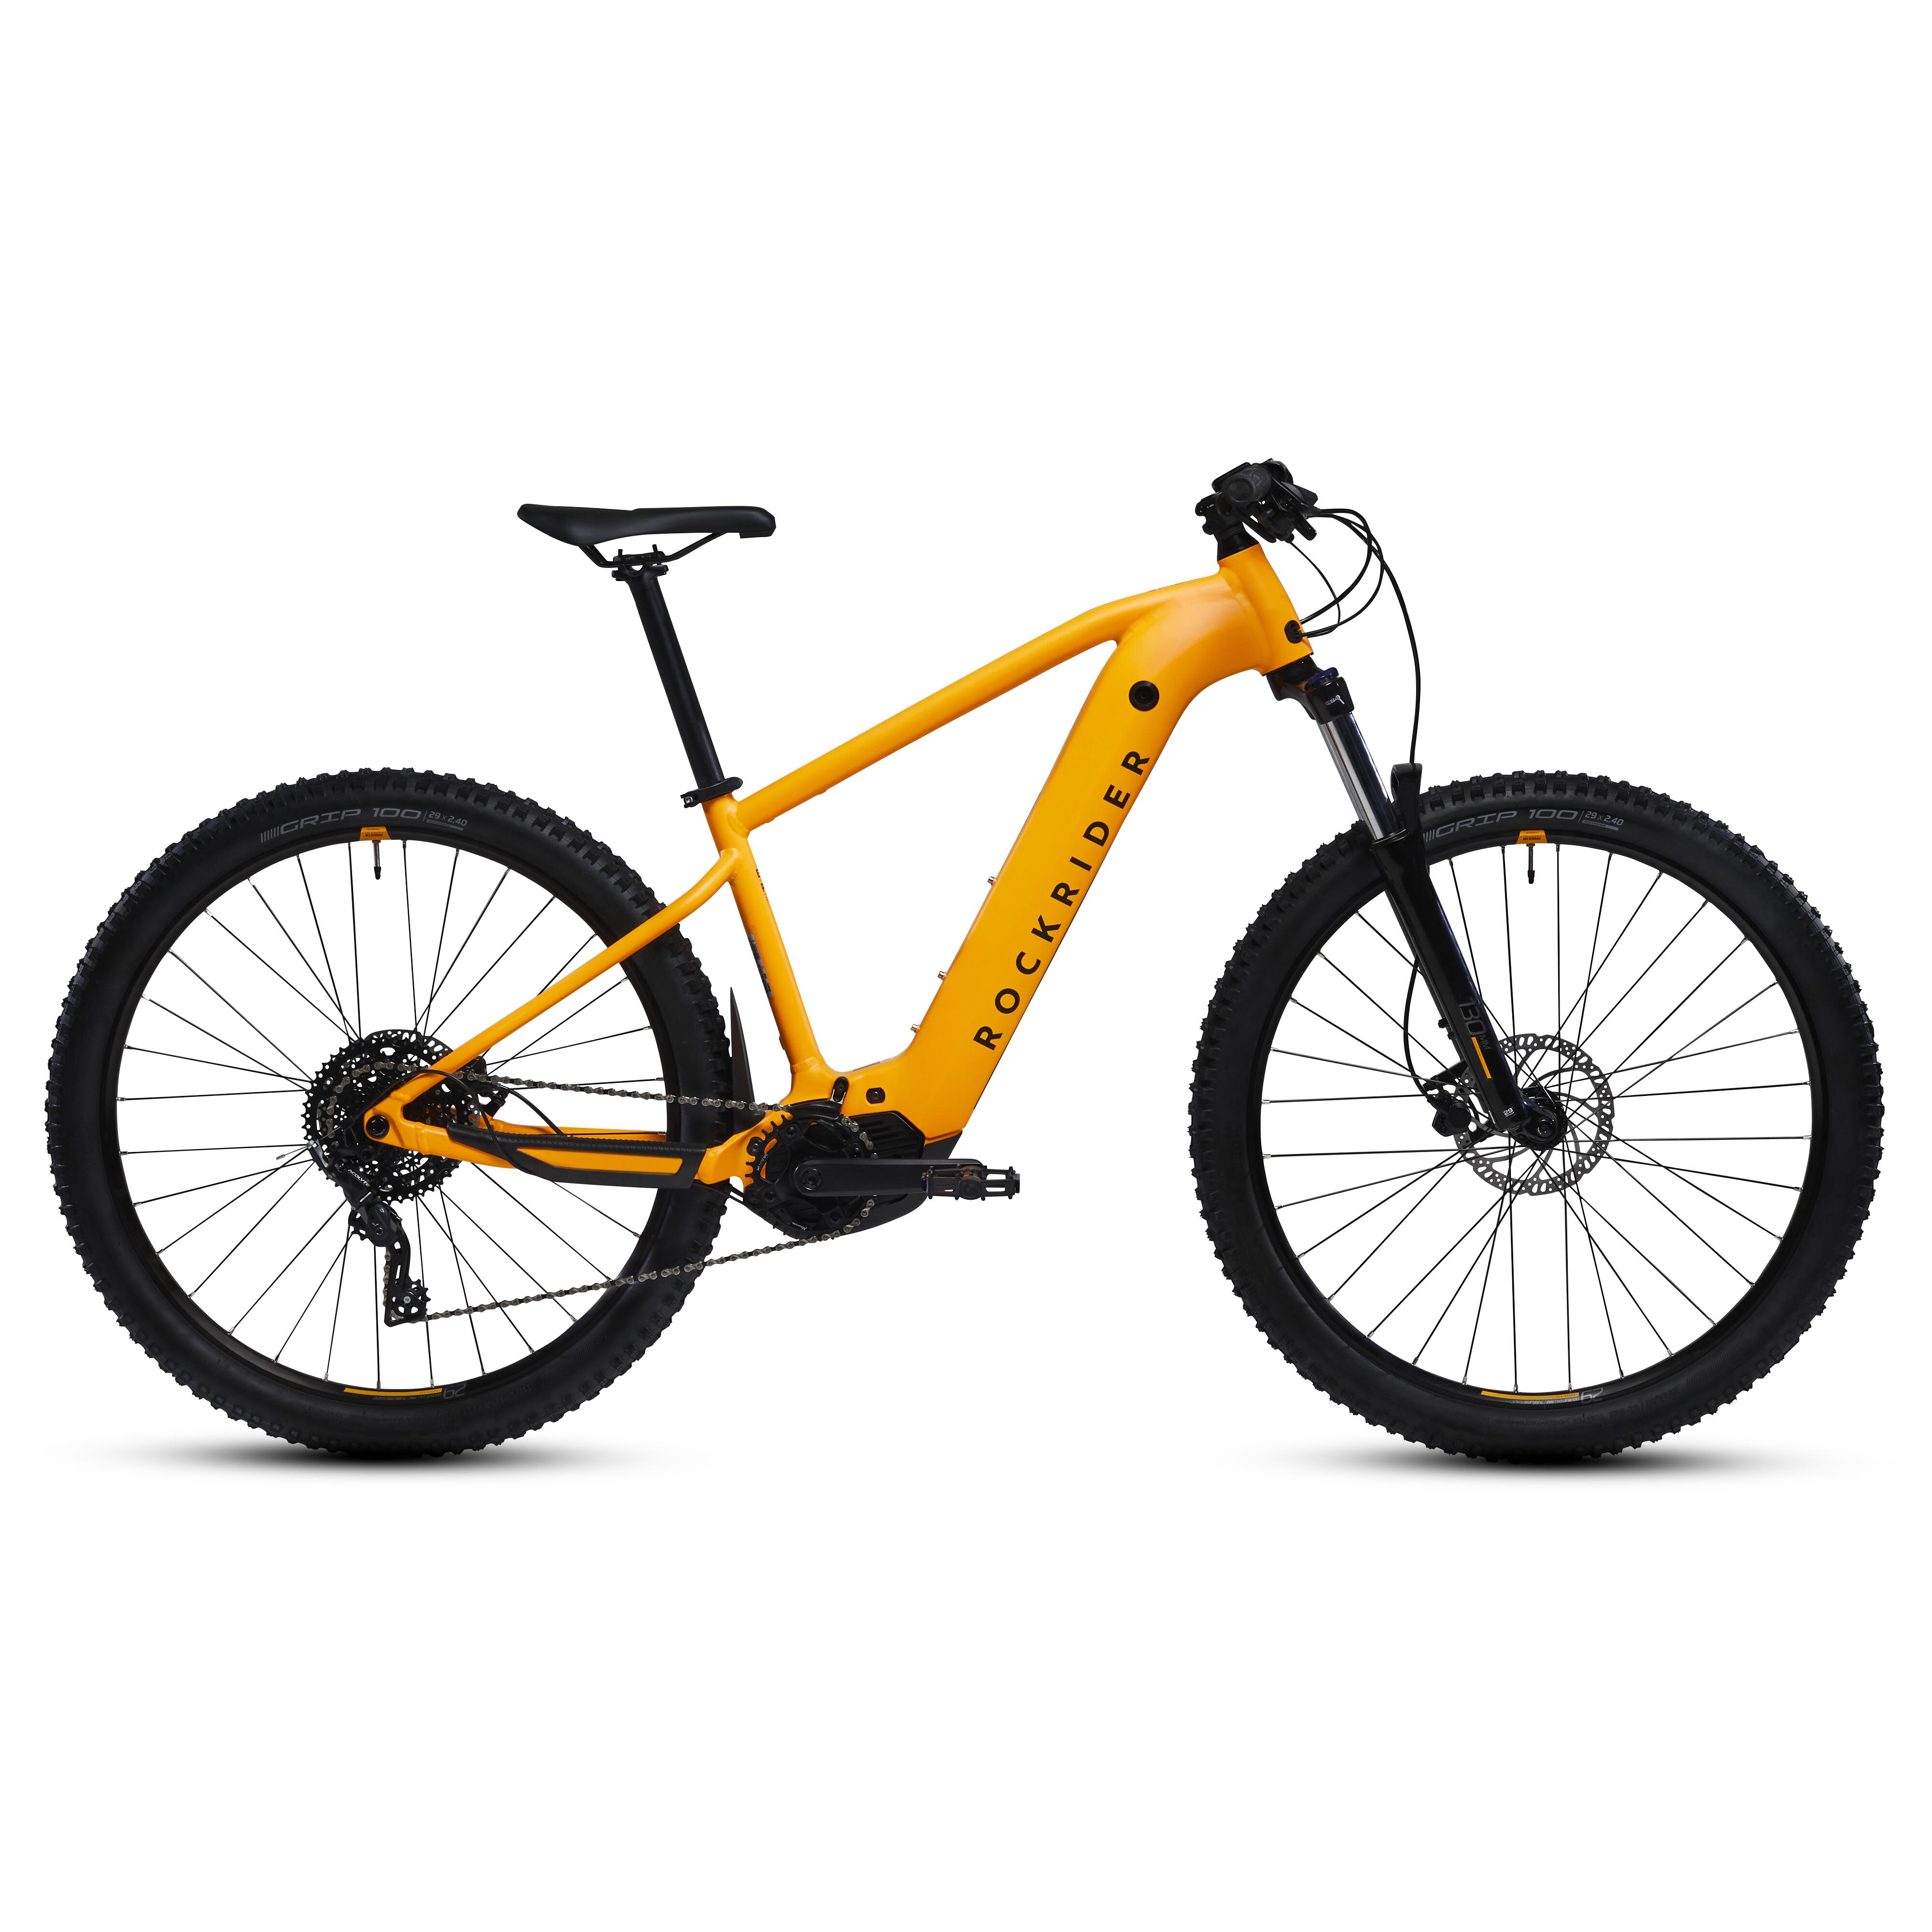  Bicicletă MTB electrică semi-rigidă 29" - E-EXPL 520 Mango 